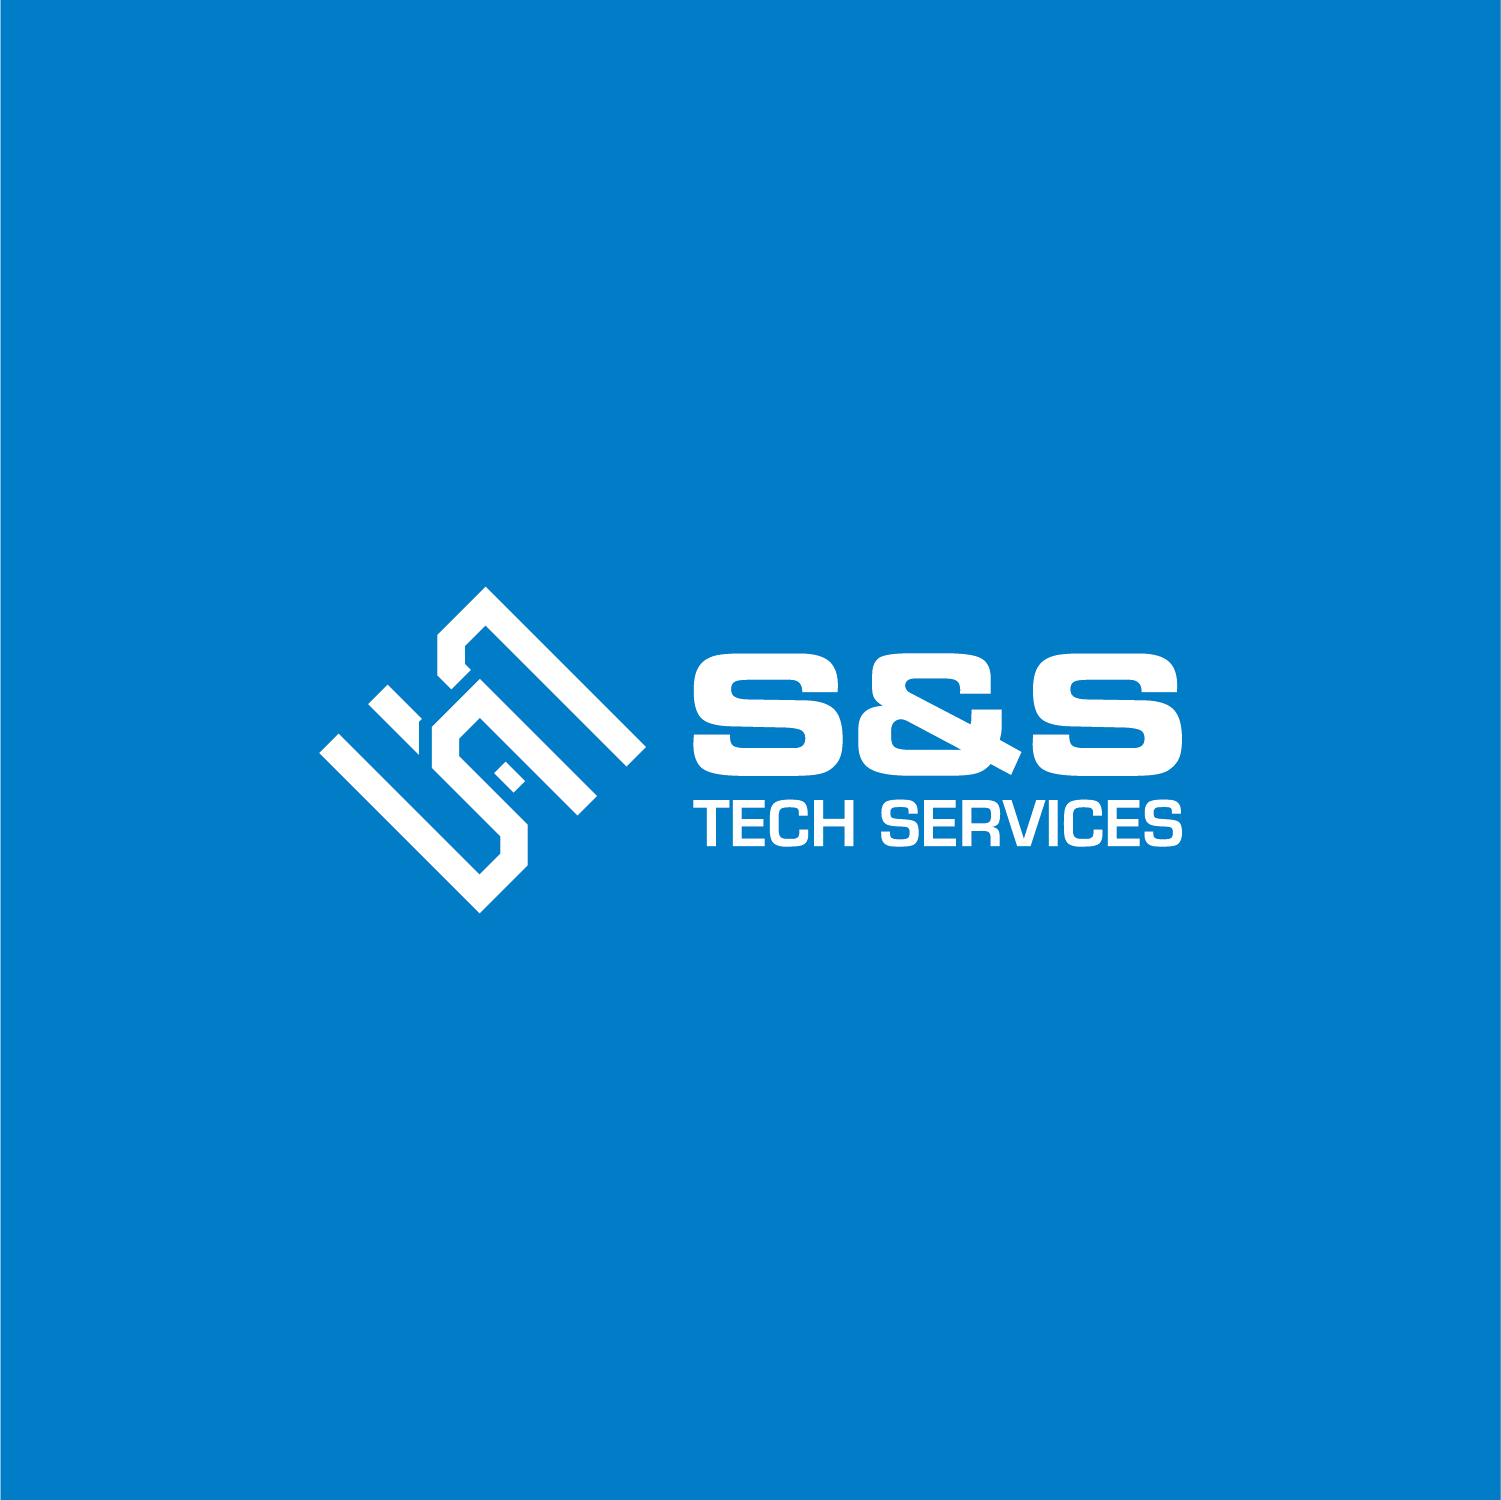 S&S Tech Services